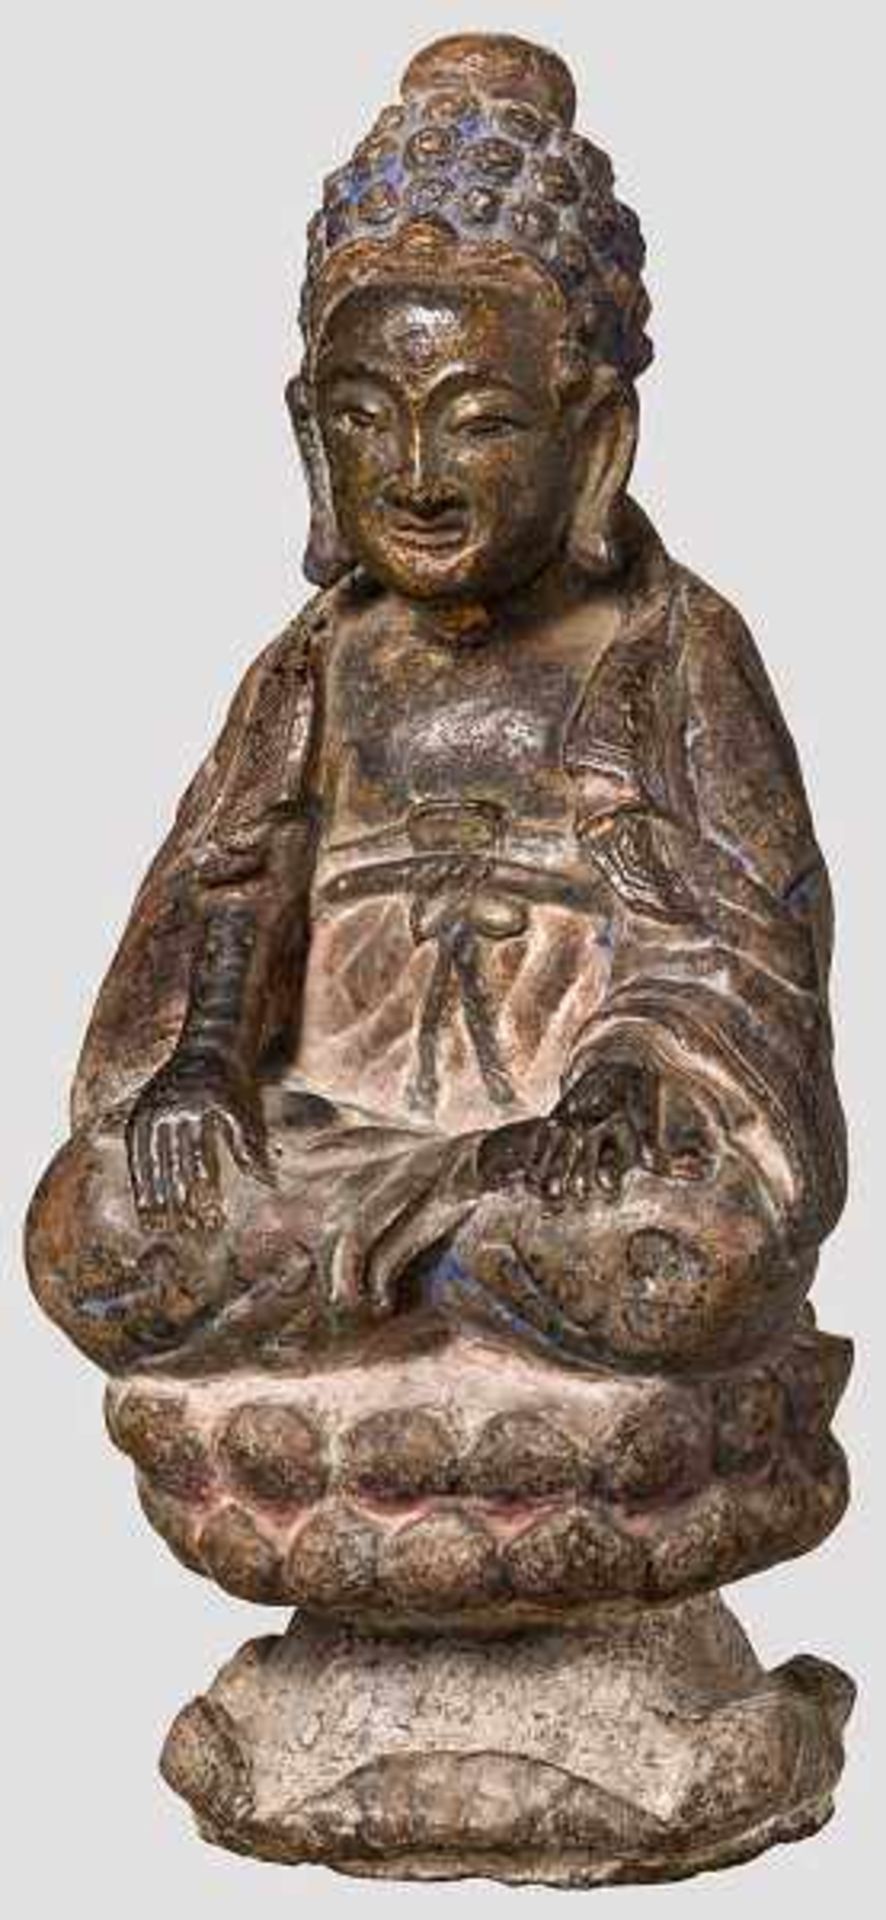 Steinerner Buddha, Bhumisparsa Mudra, 19. Jhdt. Buddha im Lotussitz, die Hände in der Geste des